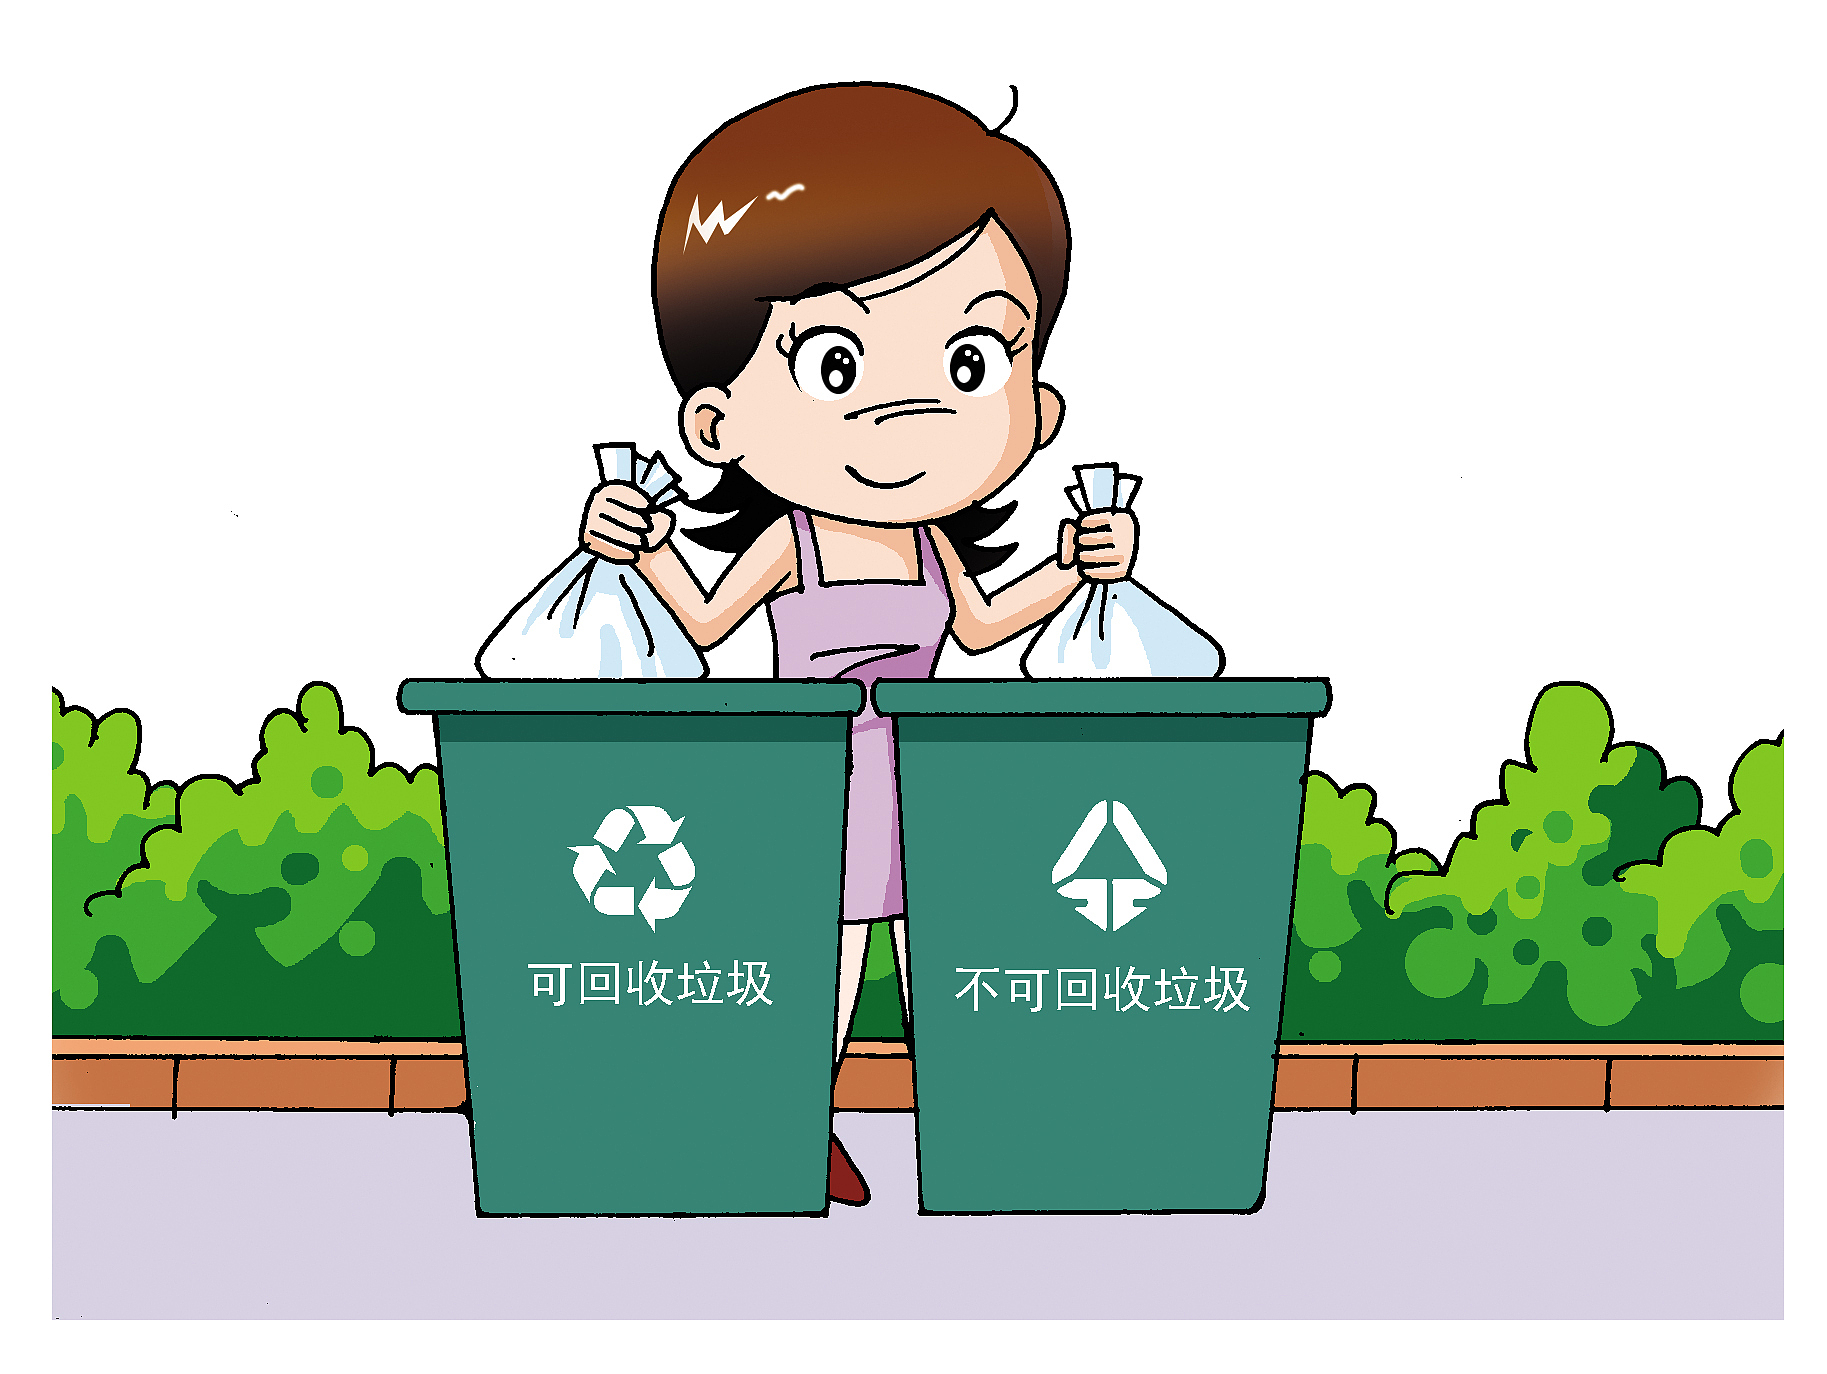 高新区—— 提质改造三处生活垃圾分类投放收集站点